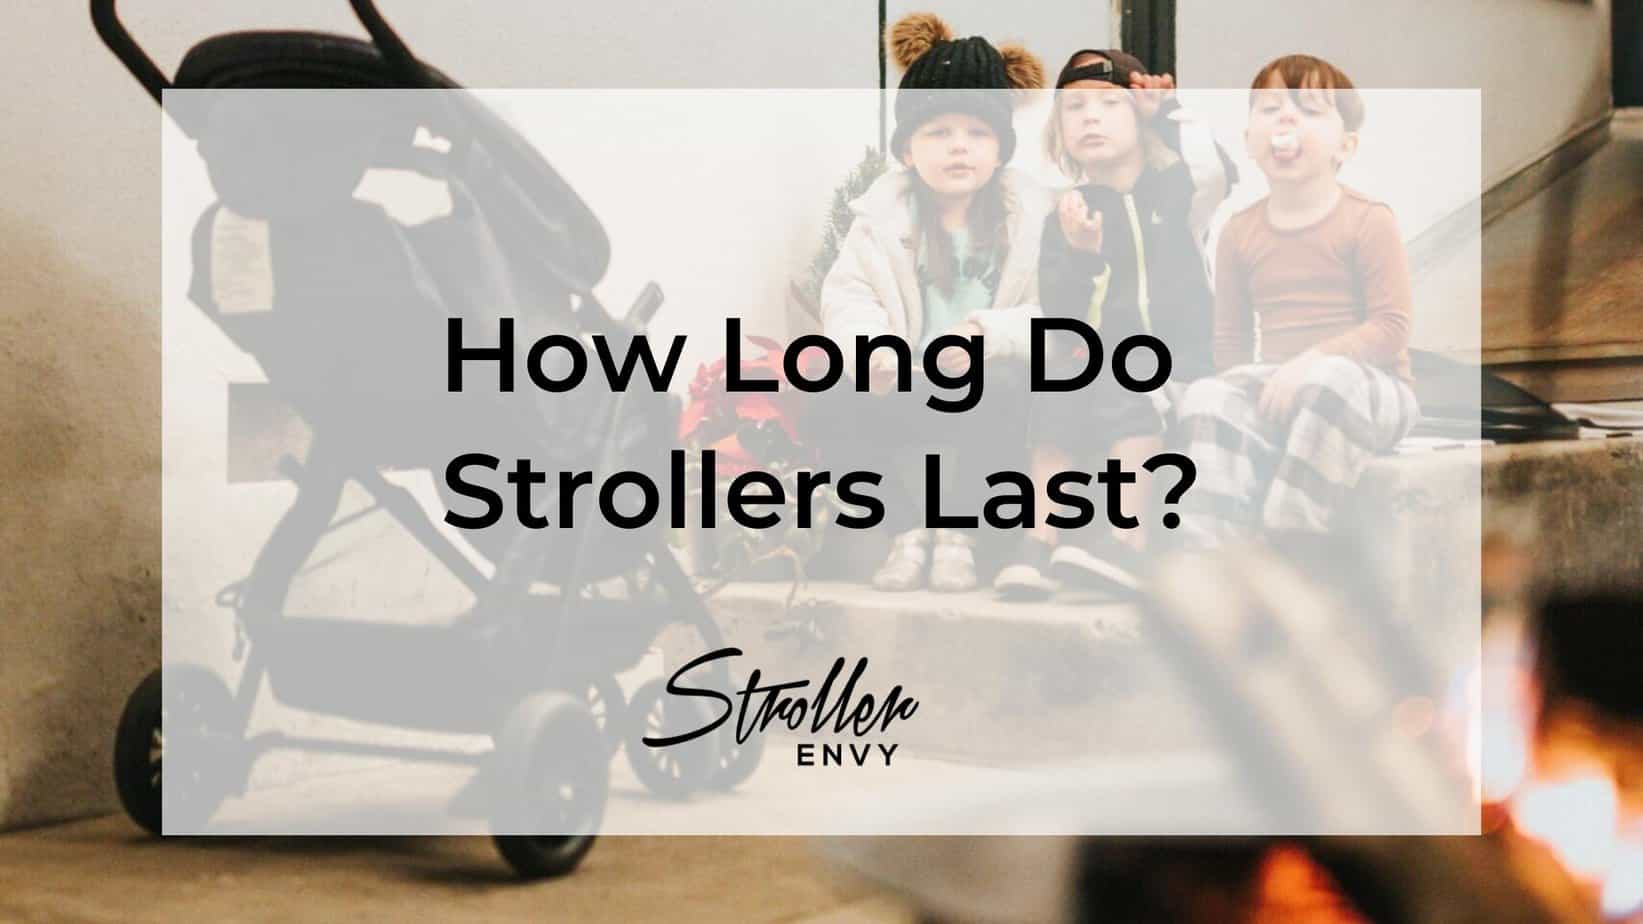 How long do stroller last